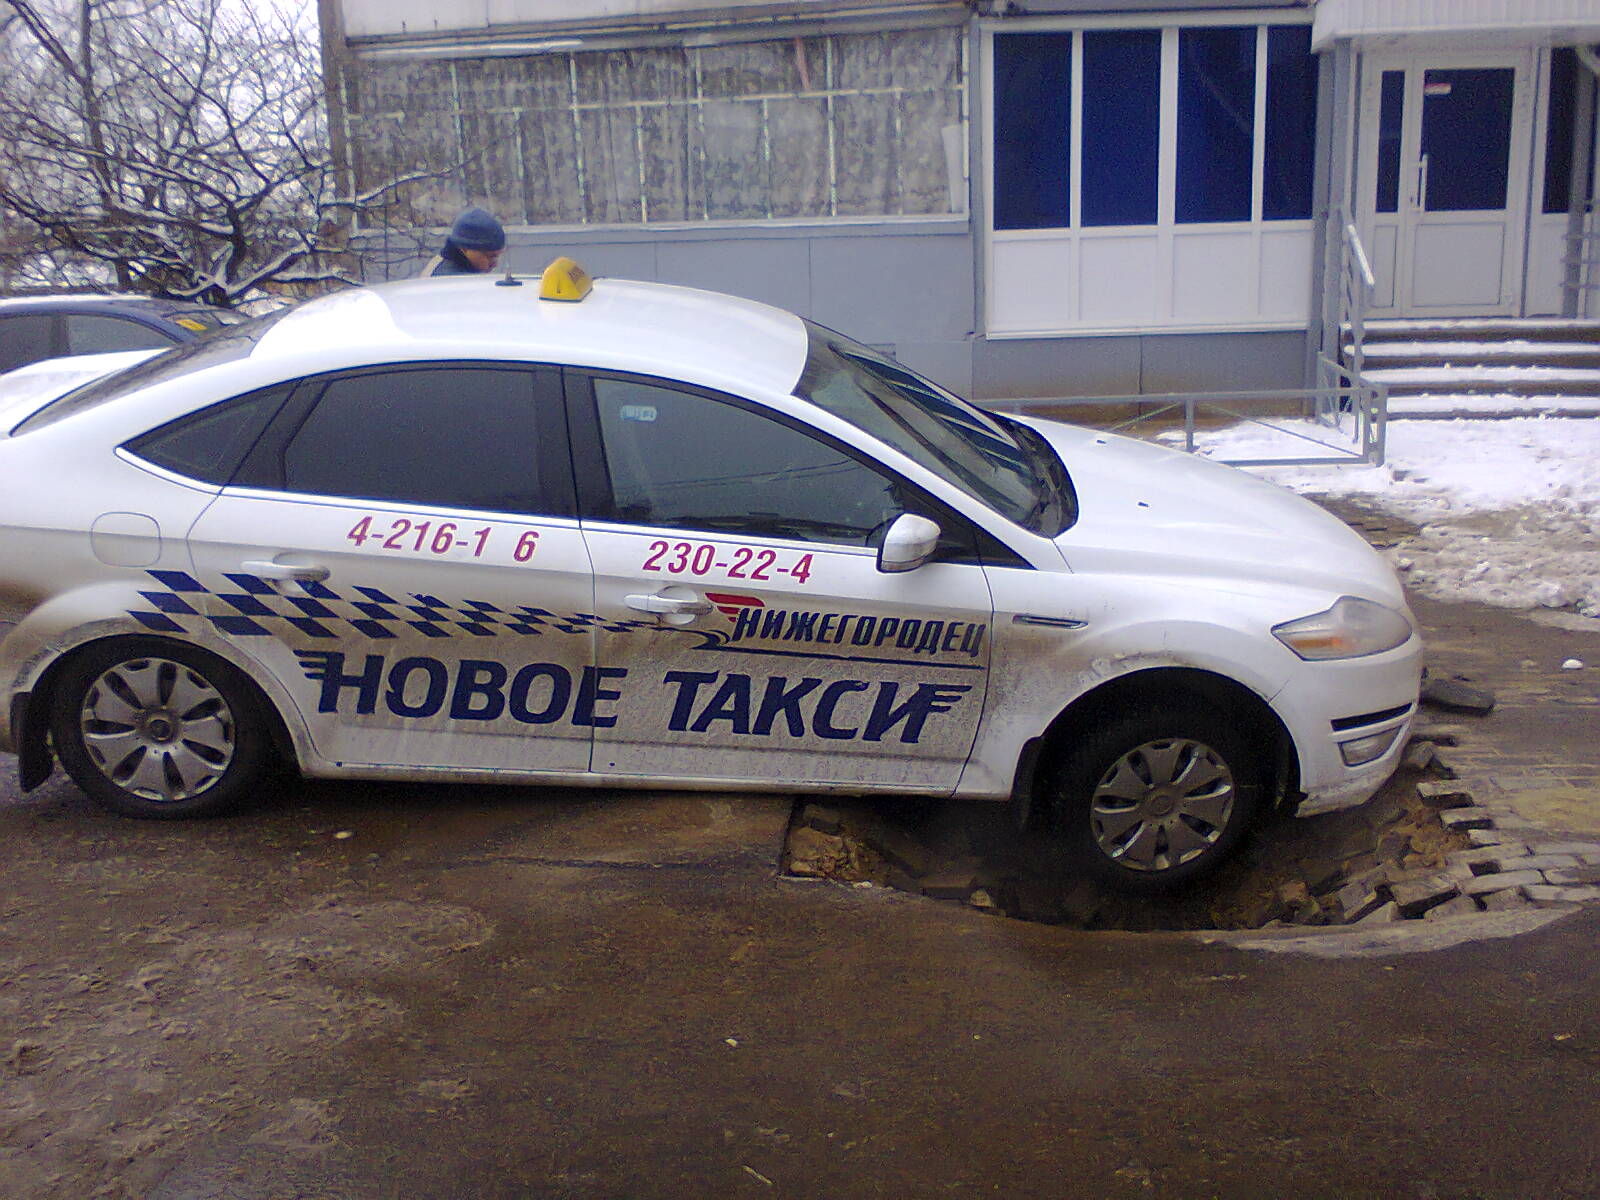 Таксопарк Нижегородец. Новое такси. Такси Нижегородец в Нижнем Новгороде.